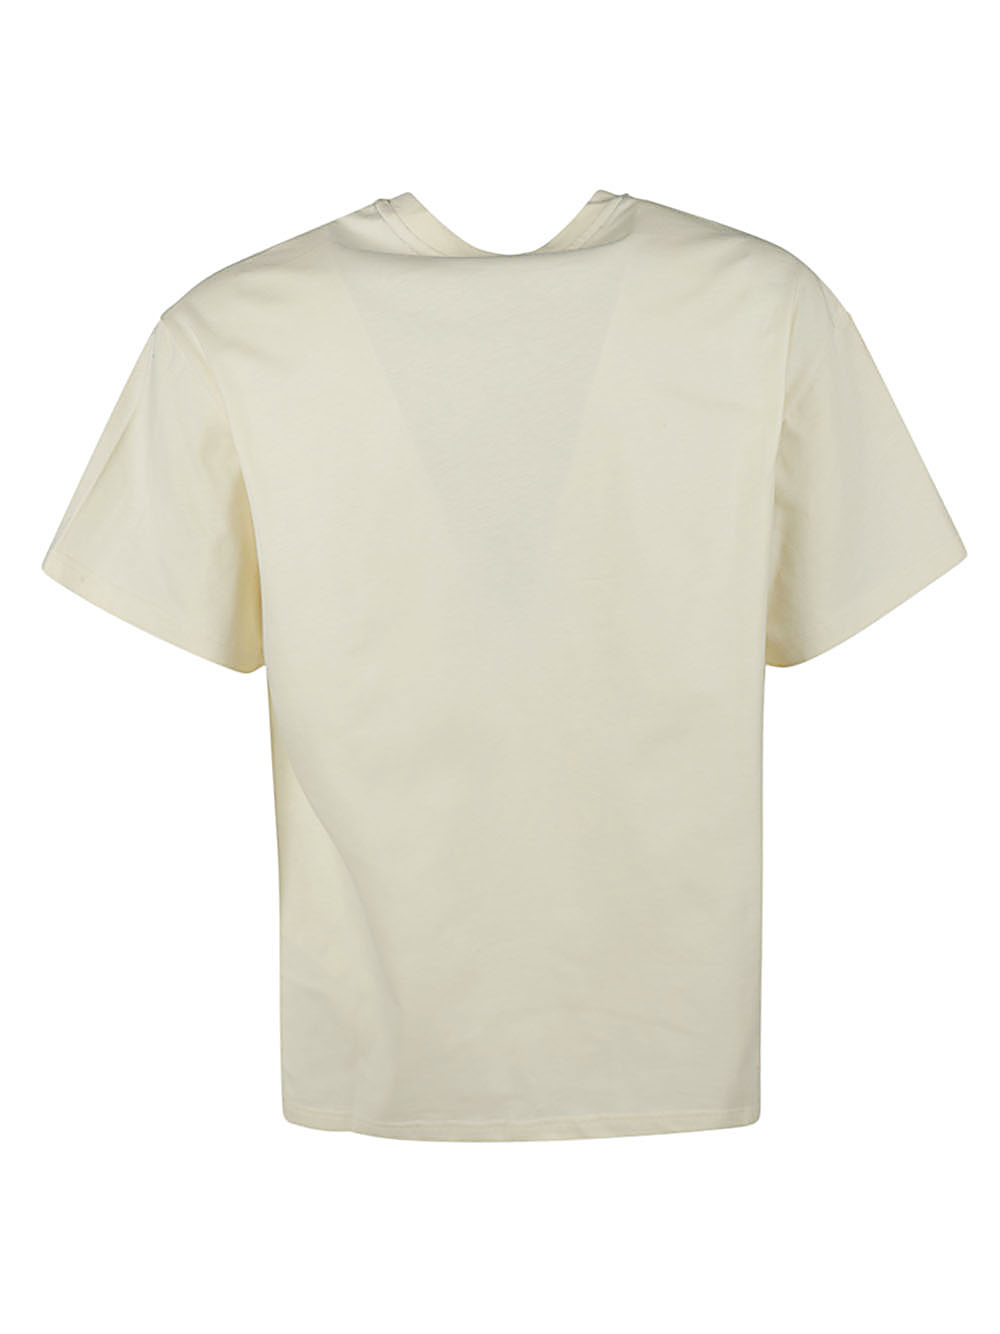 Iuter IUTER- Printed Cotton T-shirt